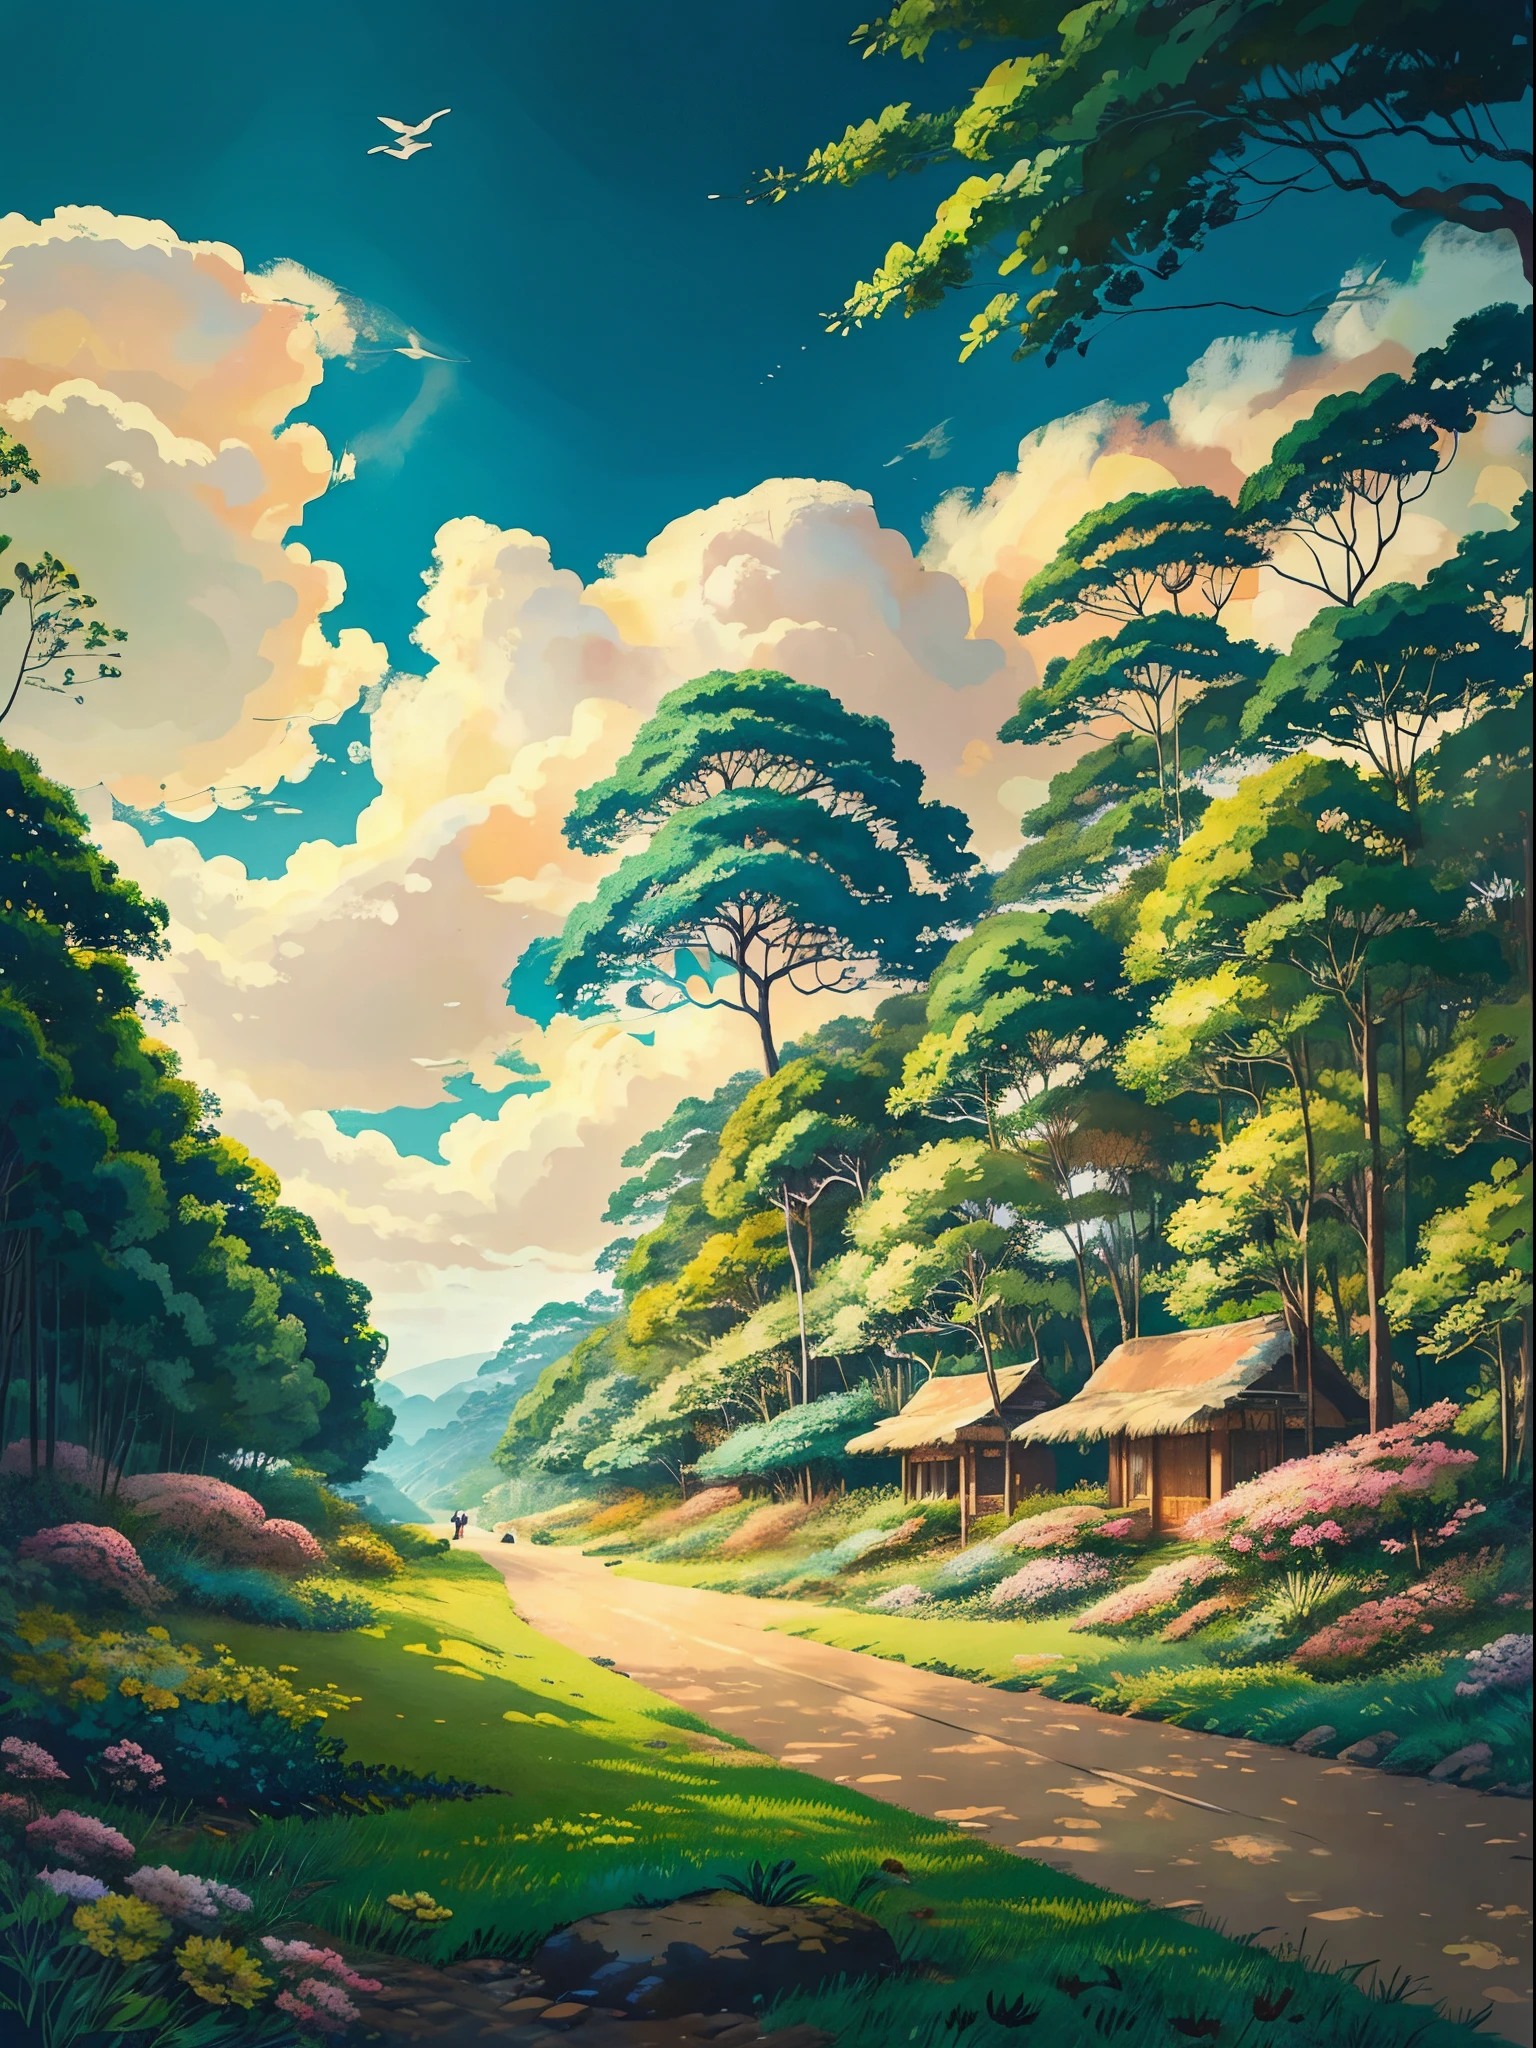 Um emocionante anime retrô inspirado em uma bela floresta tropical, campo de arroz à distância e coqueiro, estilo do Studio Ghibli e Hayao Miyazaki, linhas de detalhe